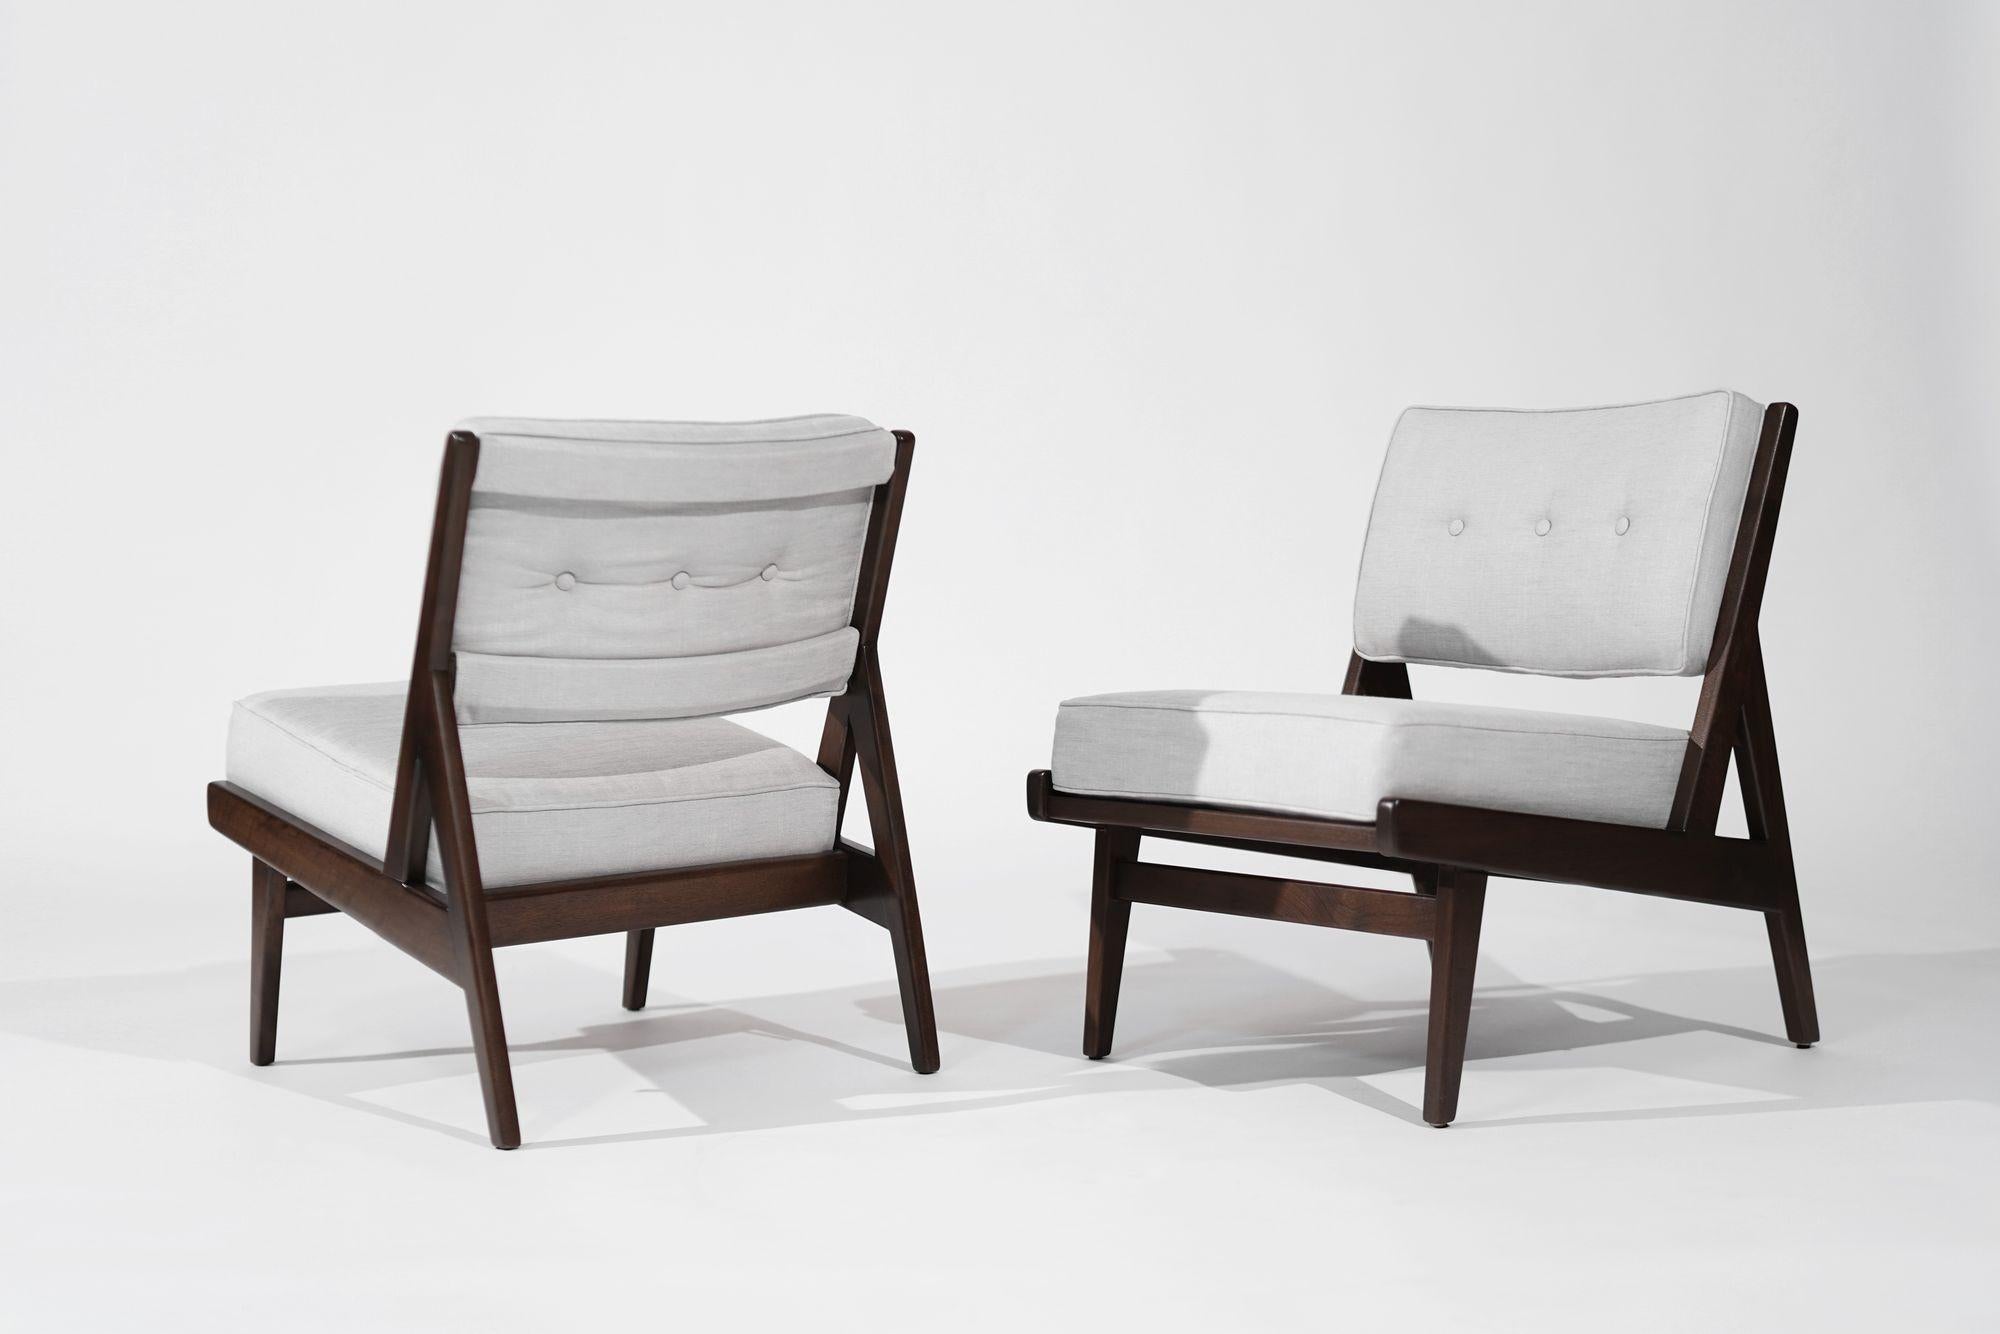 Seltene Sessel ohne Armlehne von Jens Risom für Risom, Inc., ca. 1950er Jahre (Leinen) im Angebot